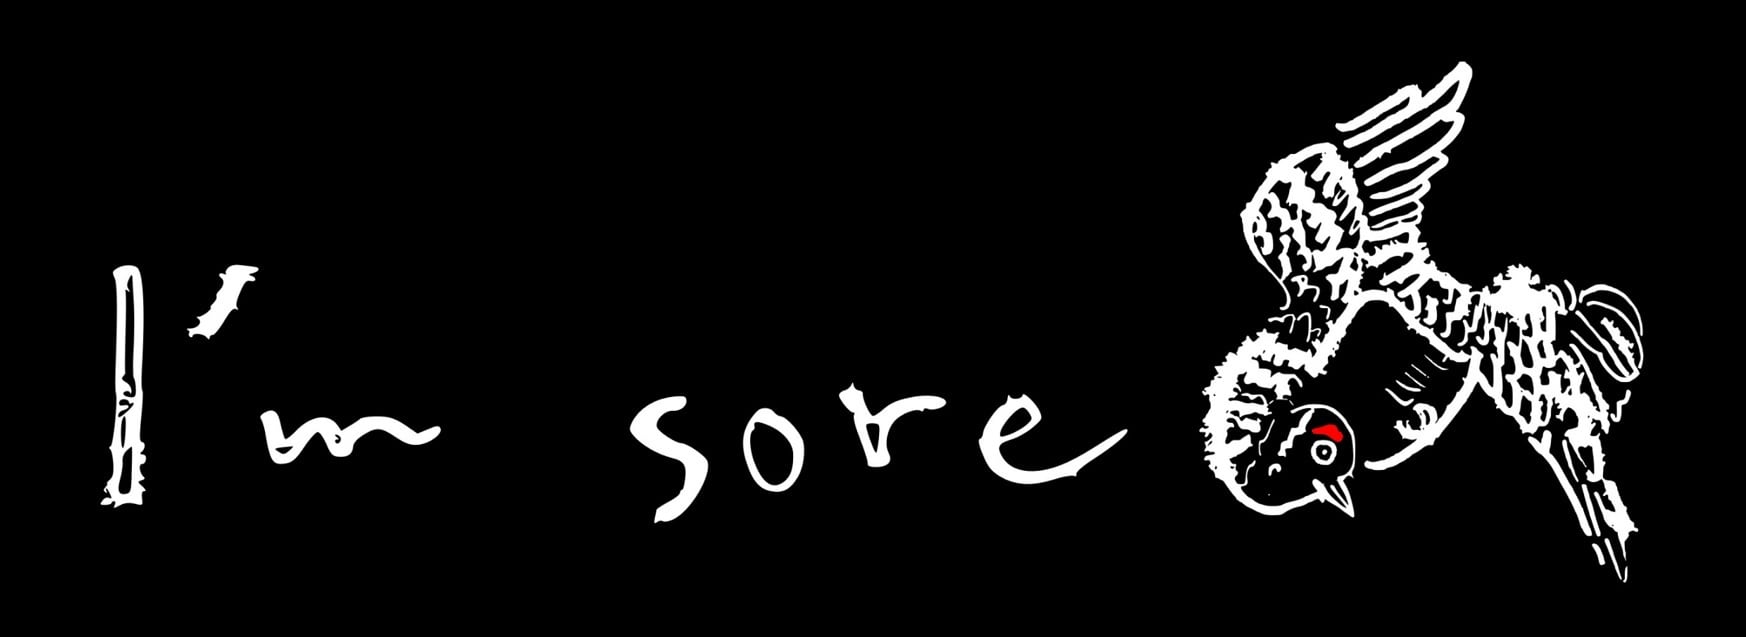 I'm sore